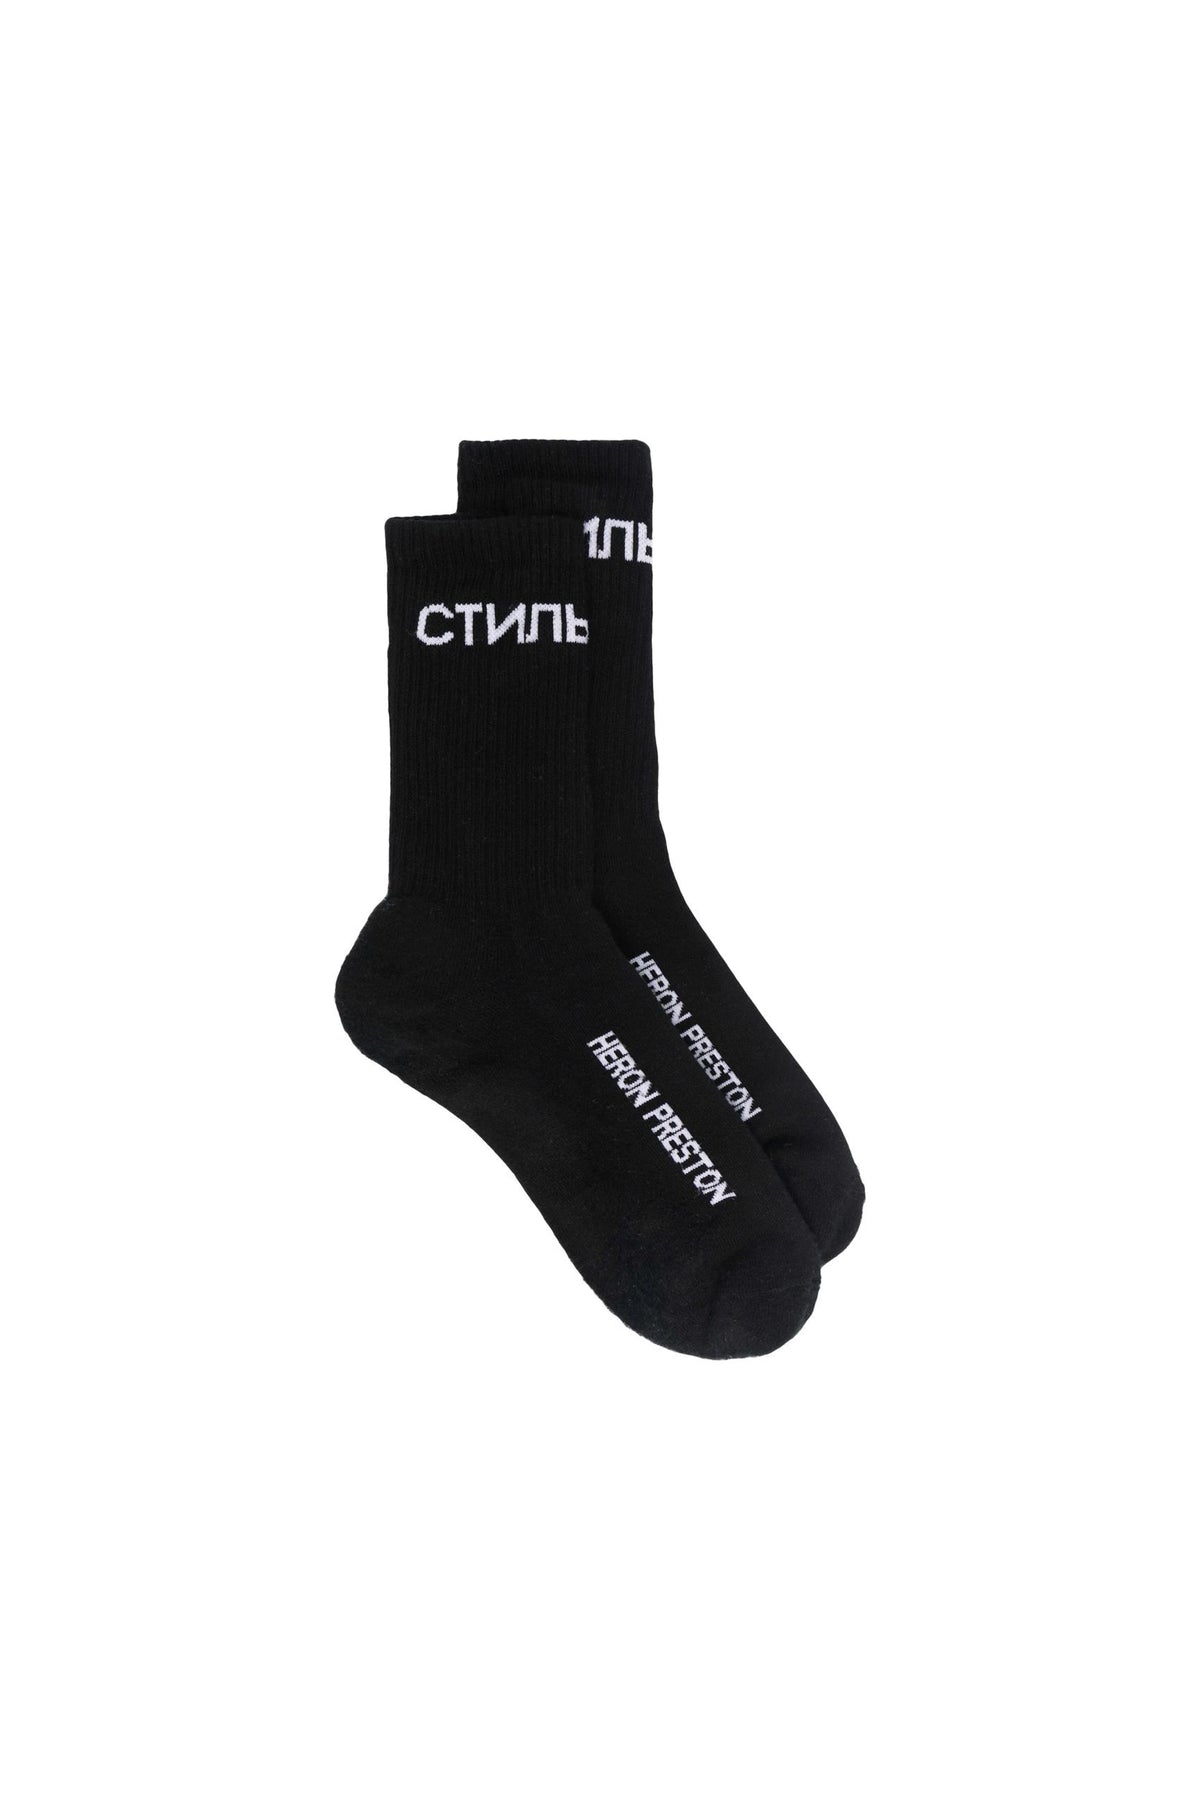 Heron Preston logo-print cotton socks black